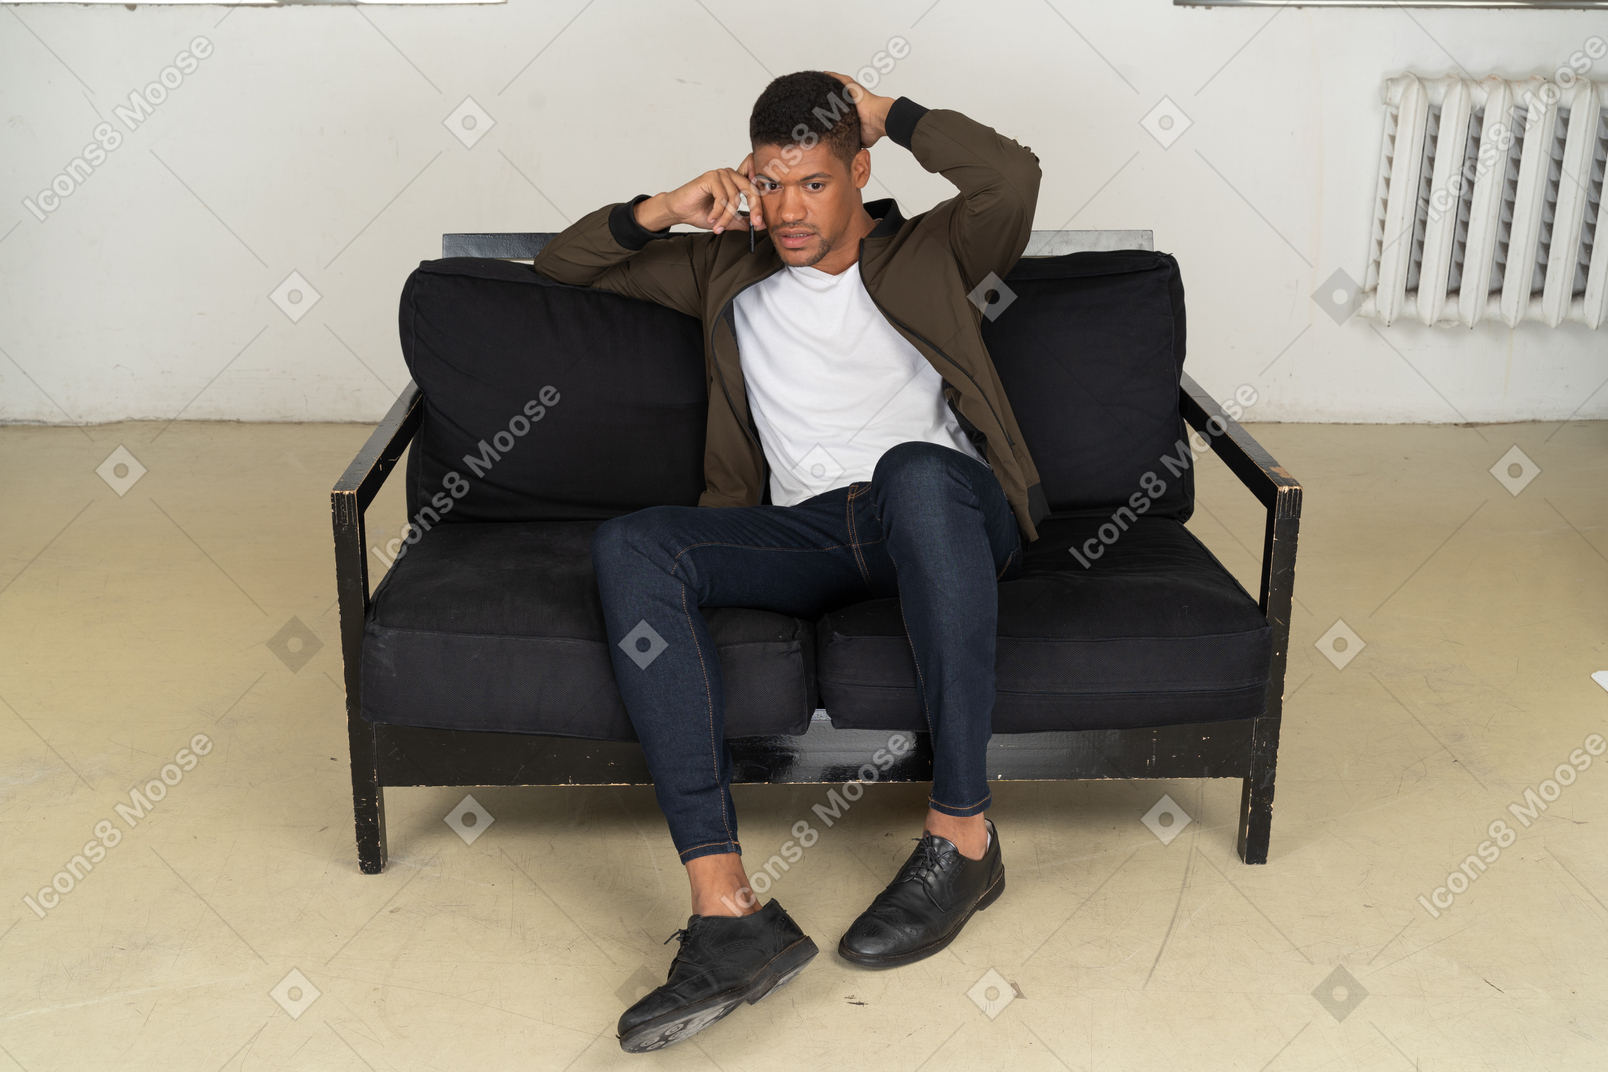 Vorderansicht eines verwirrten jungen mannes, der auf einem sofa sitzt und mit seinem telefon spricht